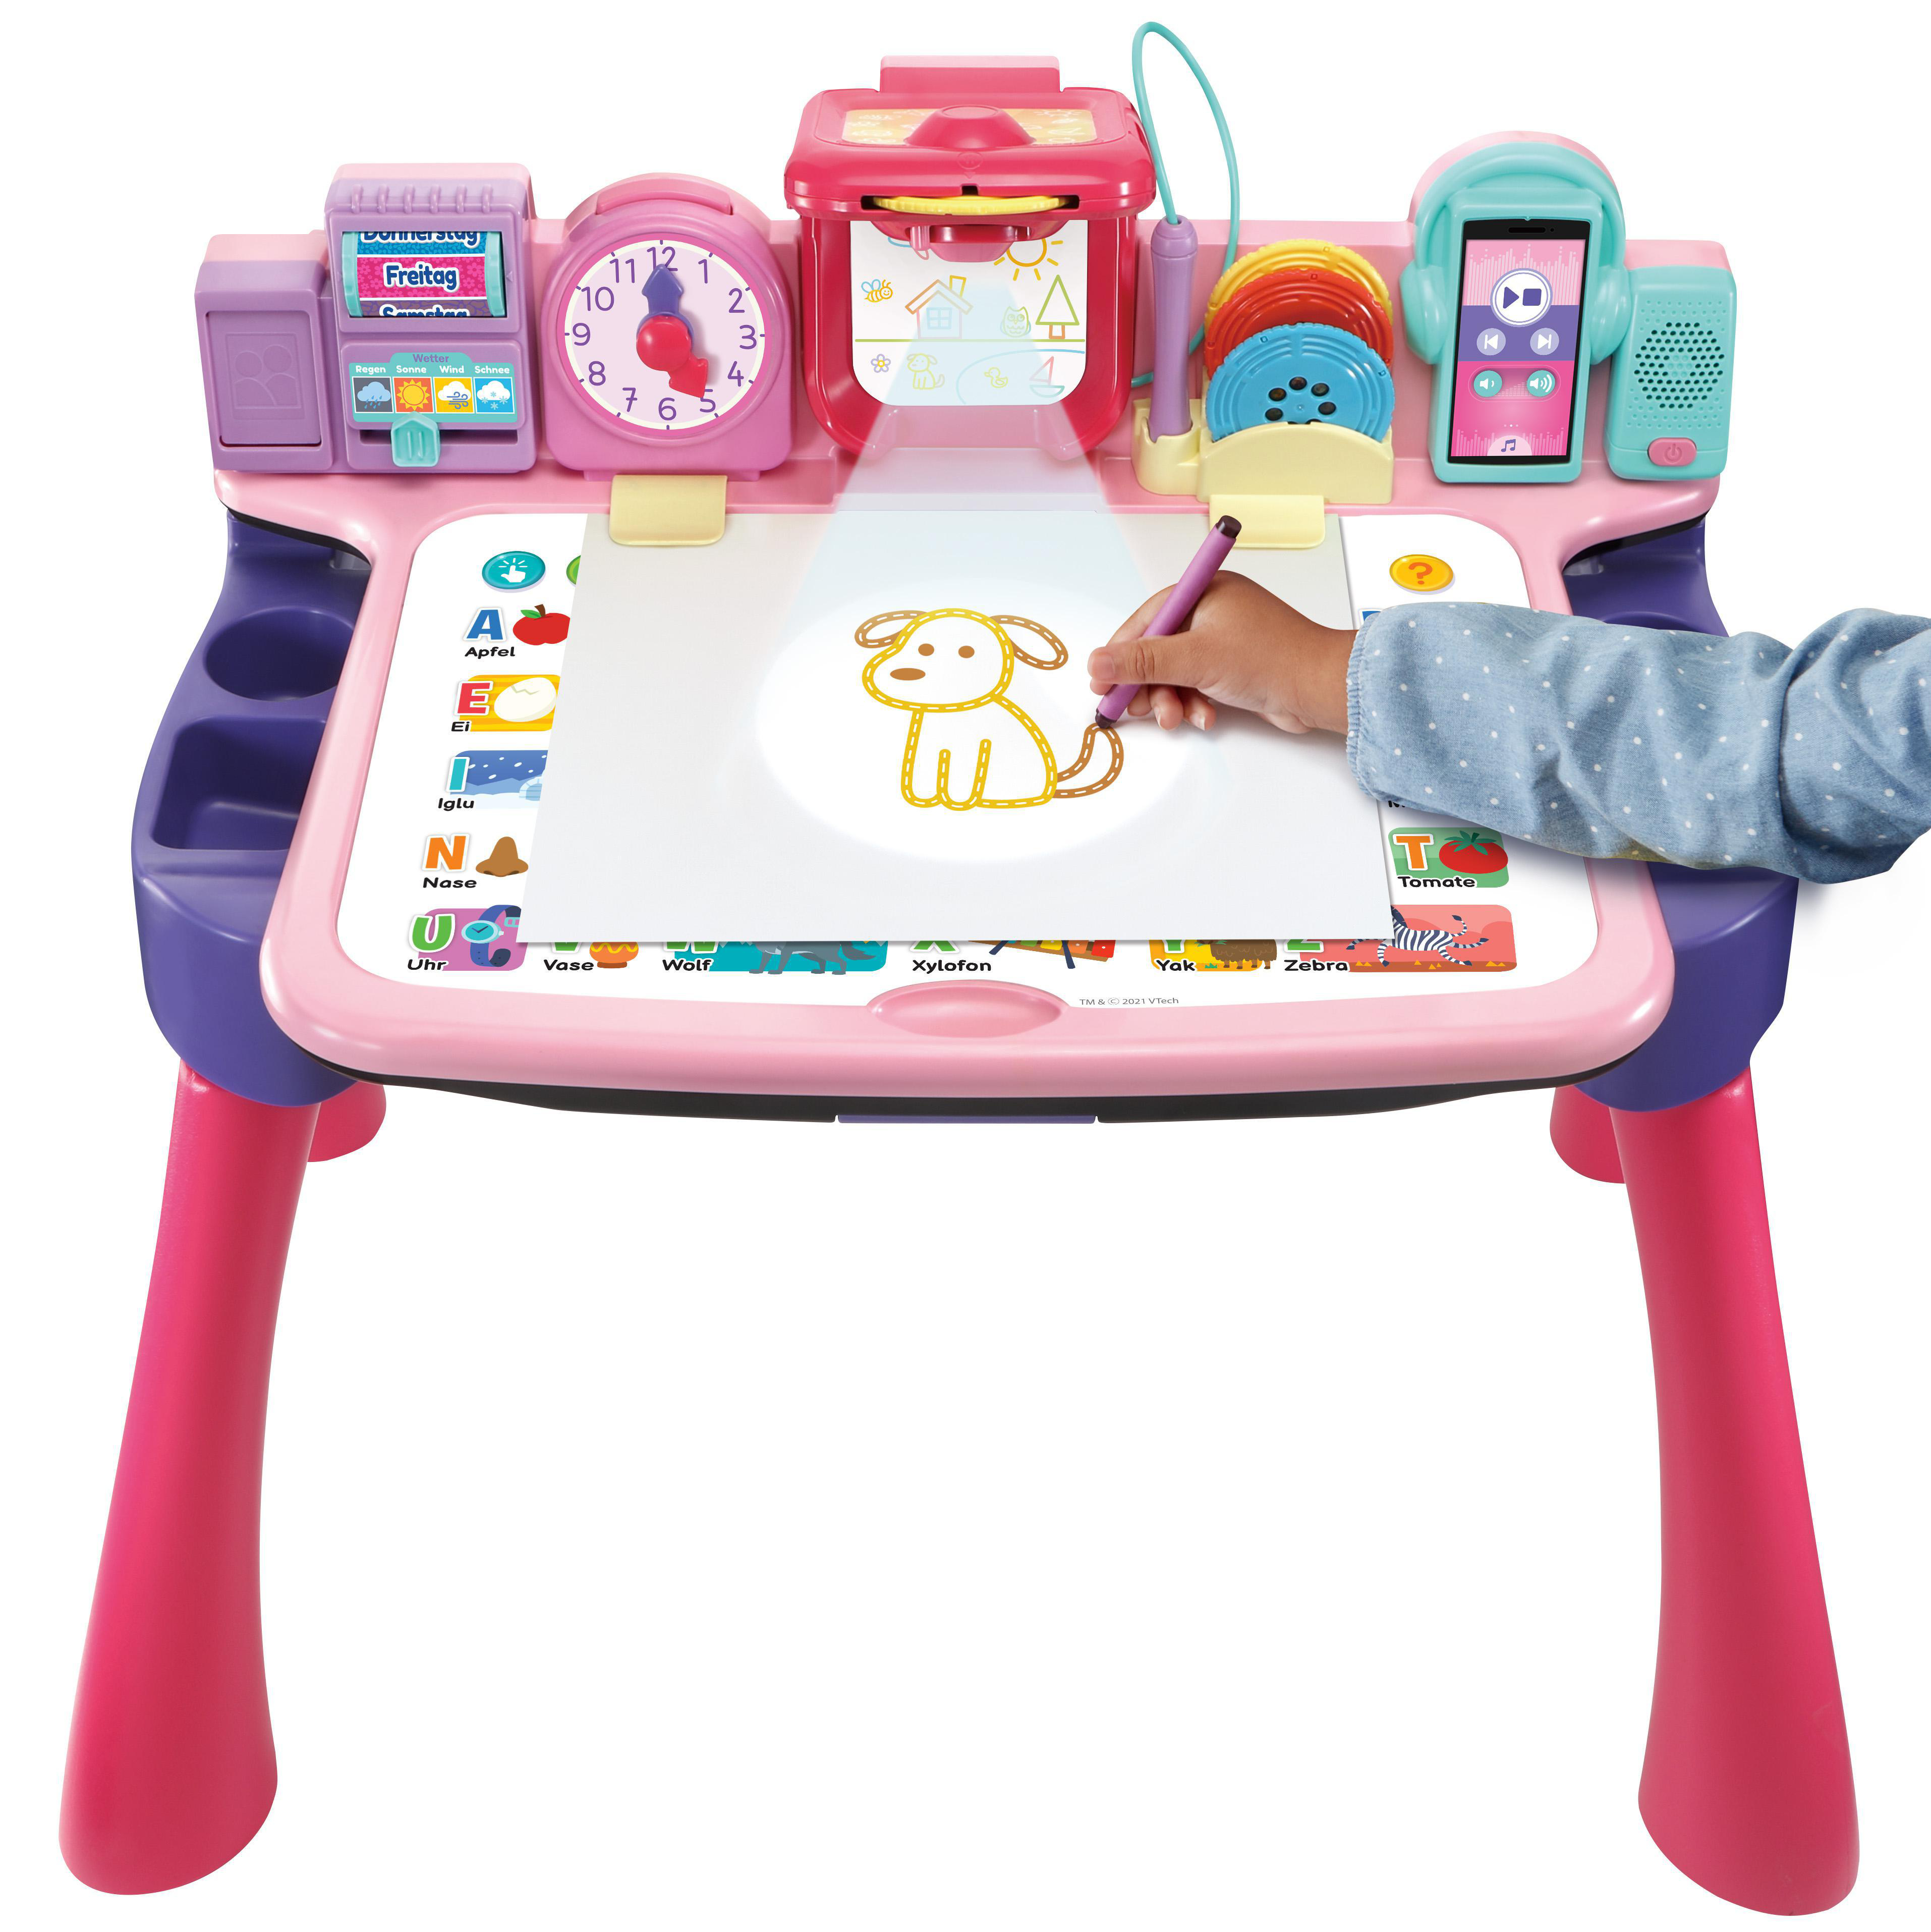 VTECH Pink Schreibtisch 5-in-1 Magischer Kinderspielzeug,